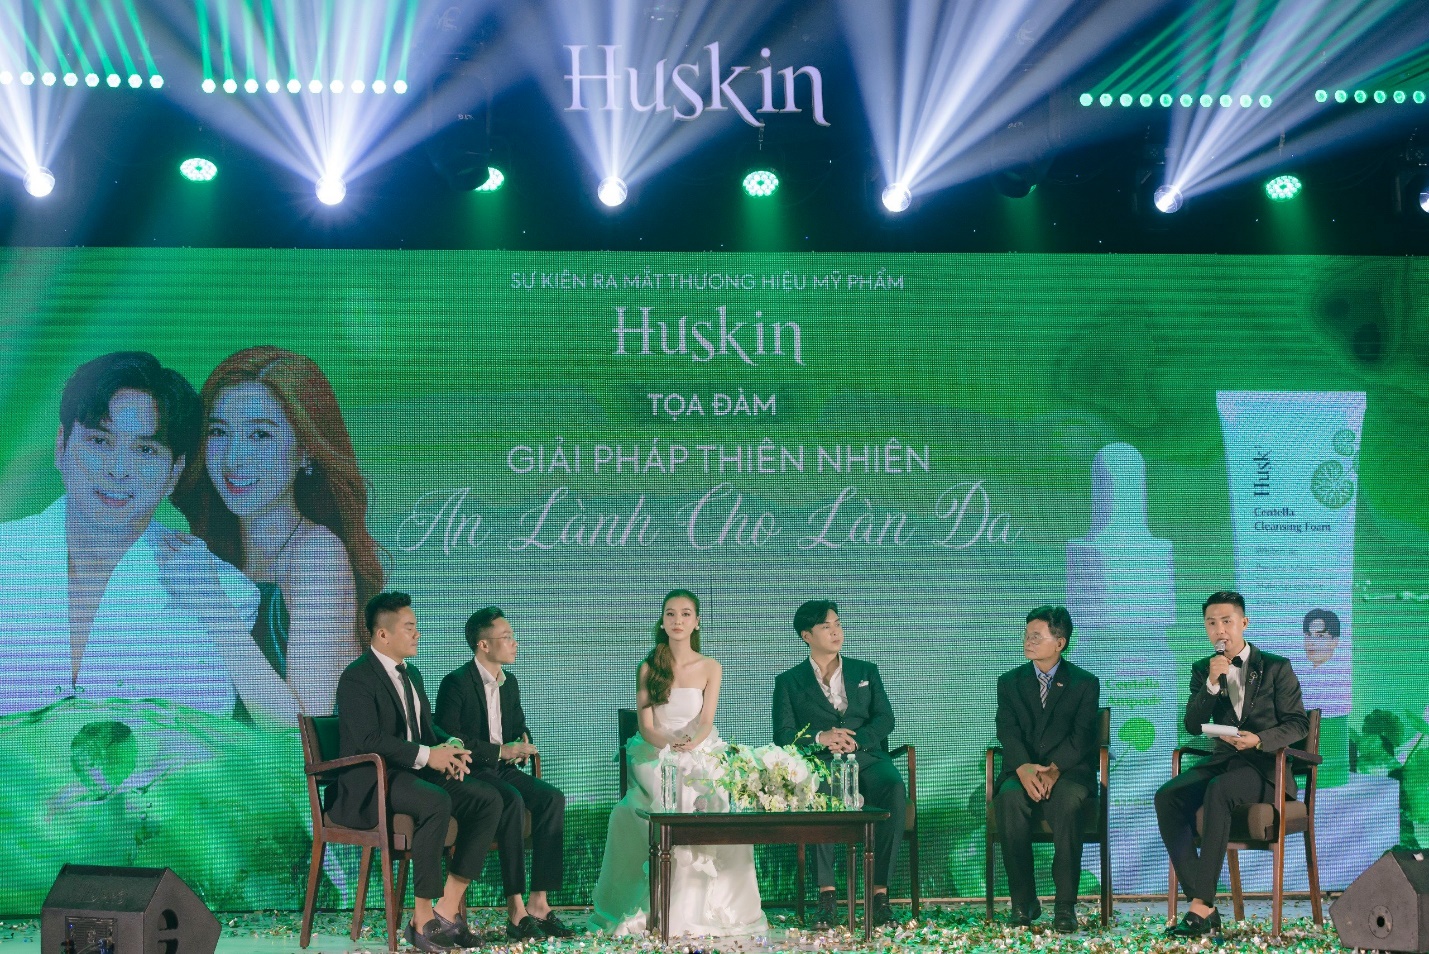 Hồ Quang Hiếu, Tuệ Như lên chức chủ tịch công ty mỹ phẩm Huskin - 3